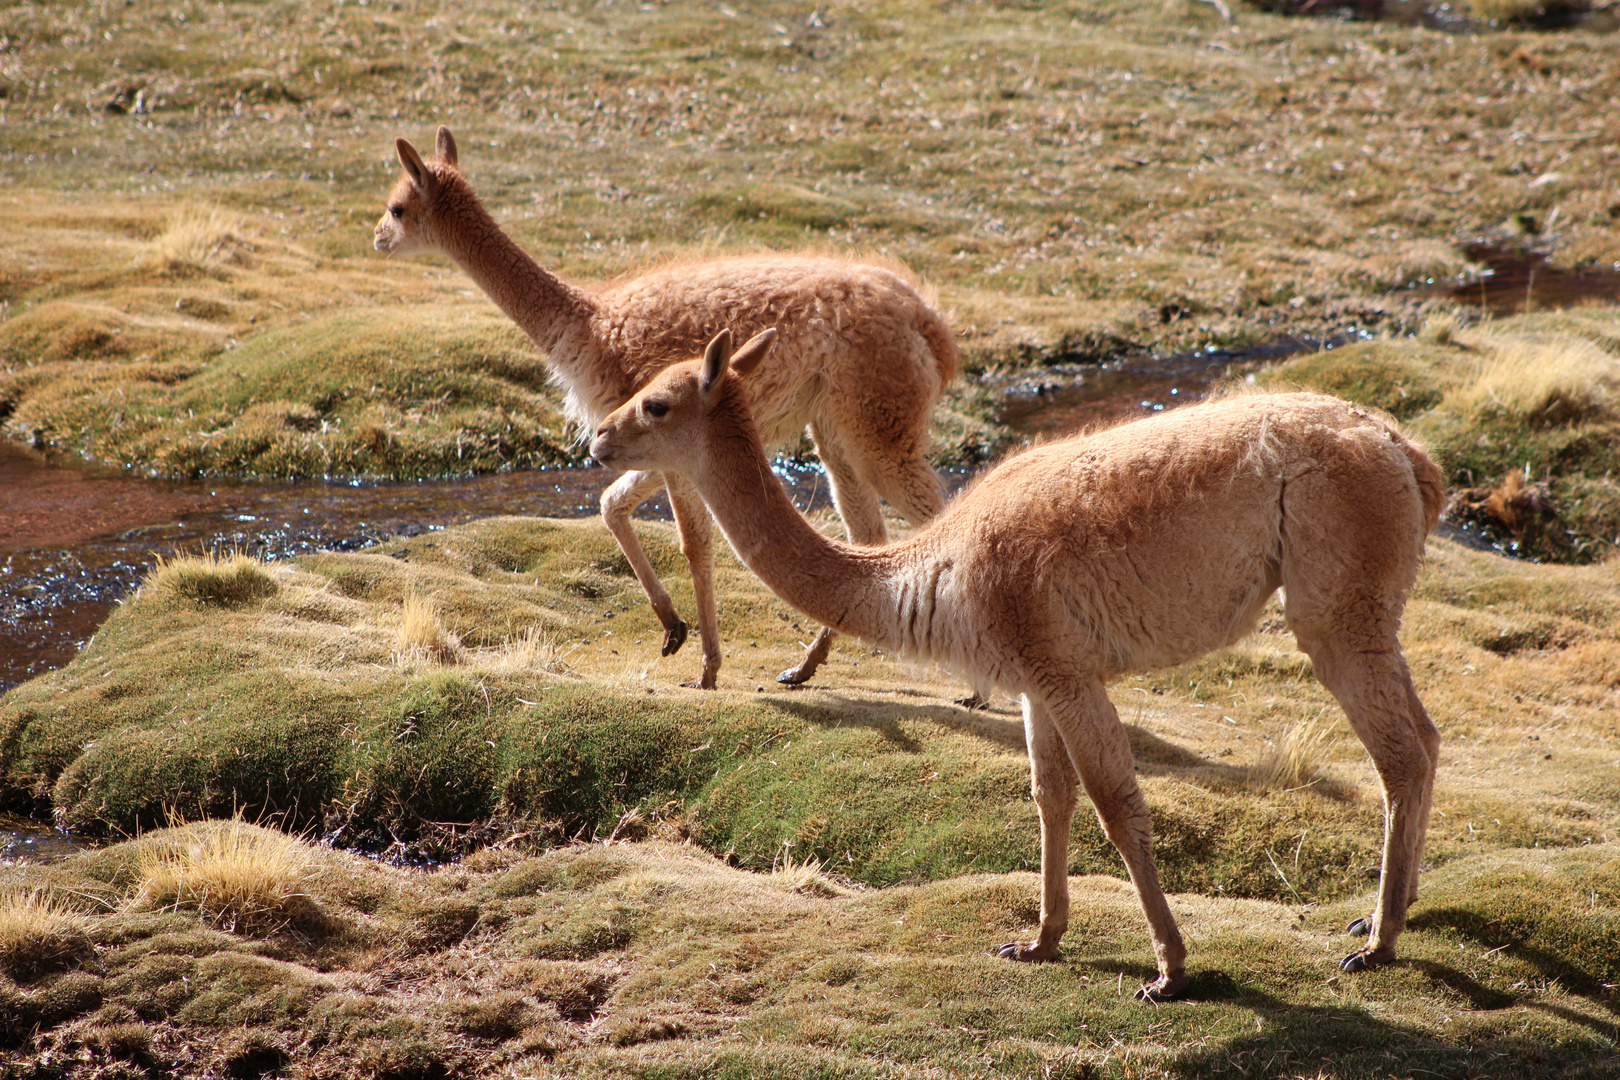 vicuñas